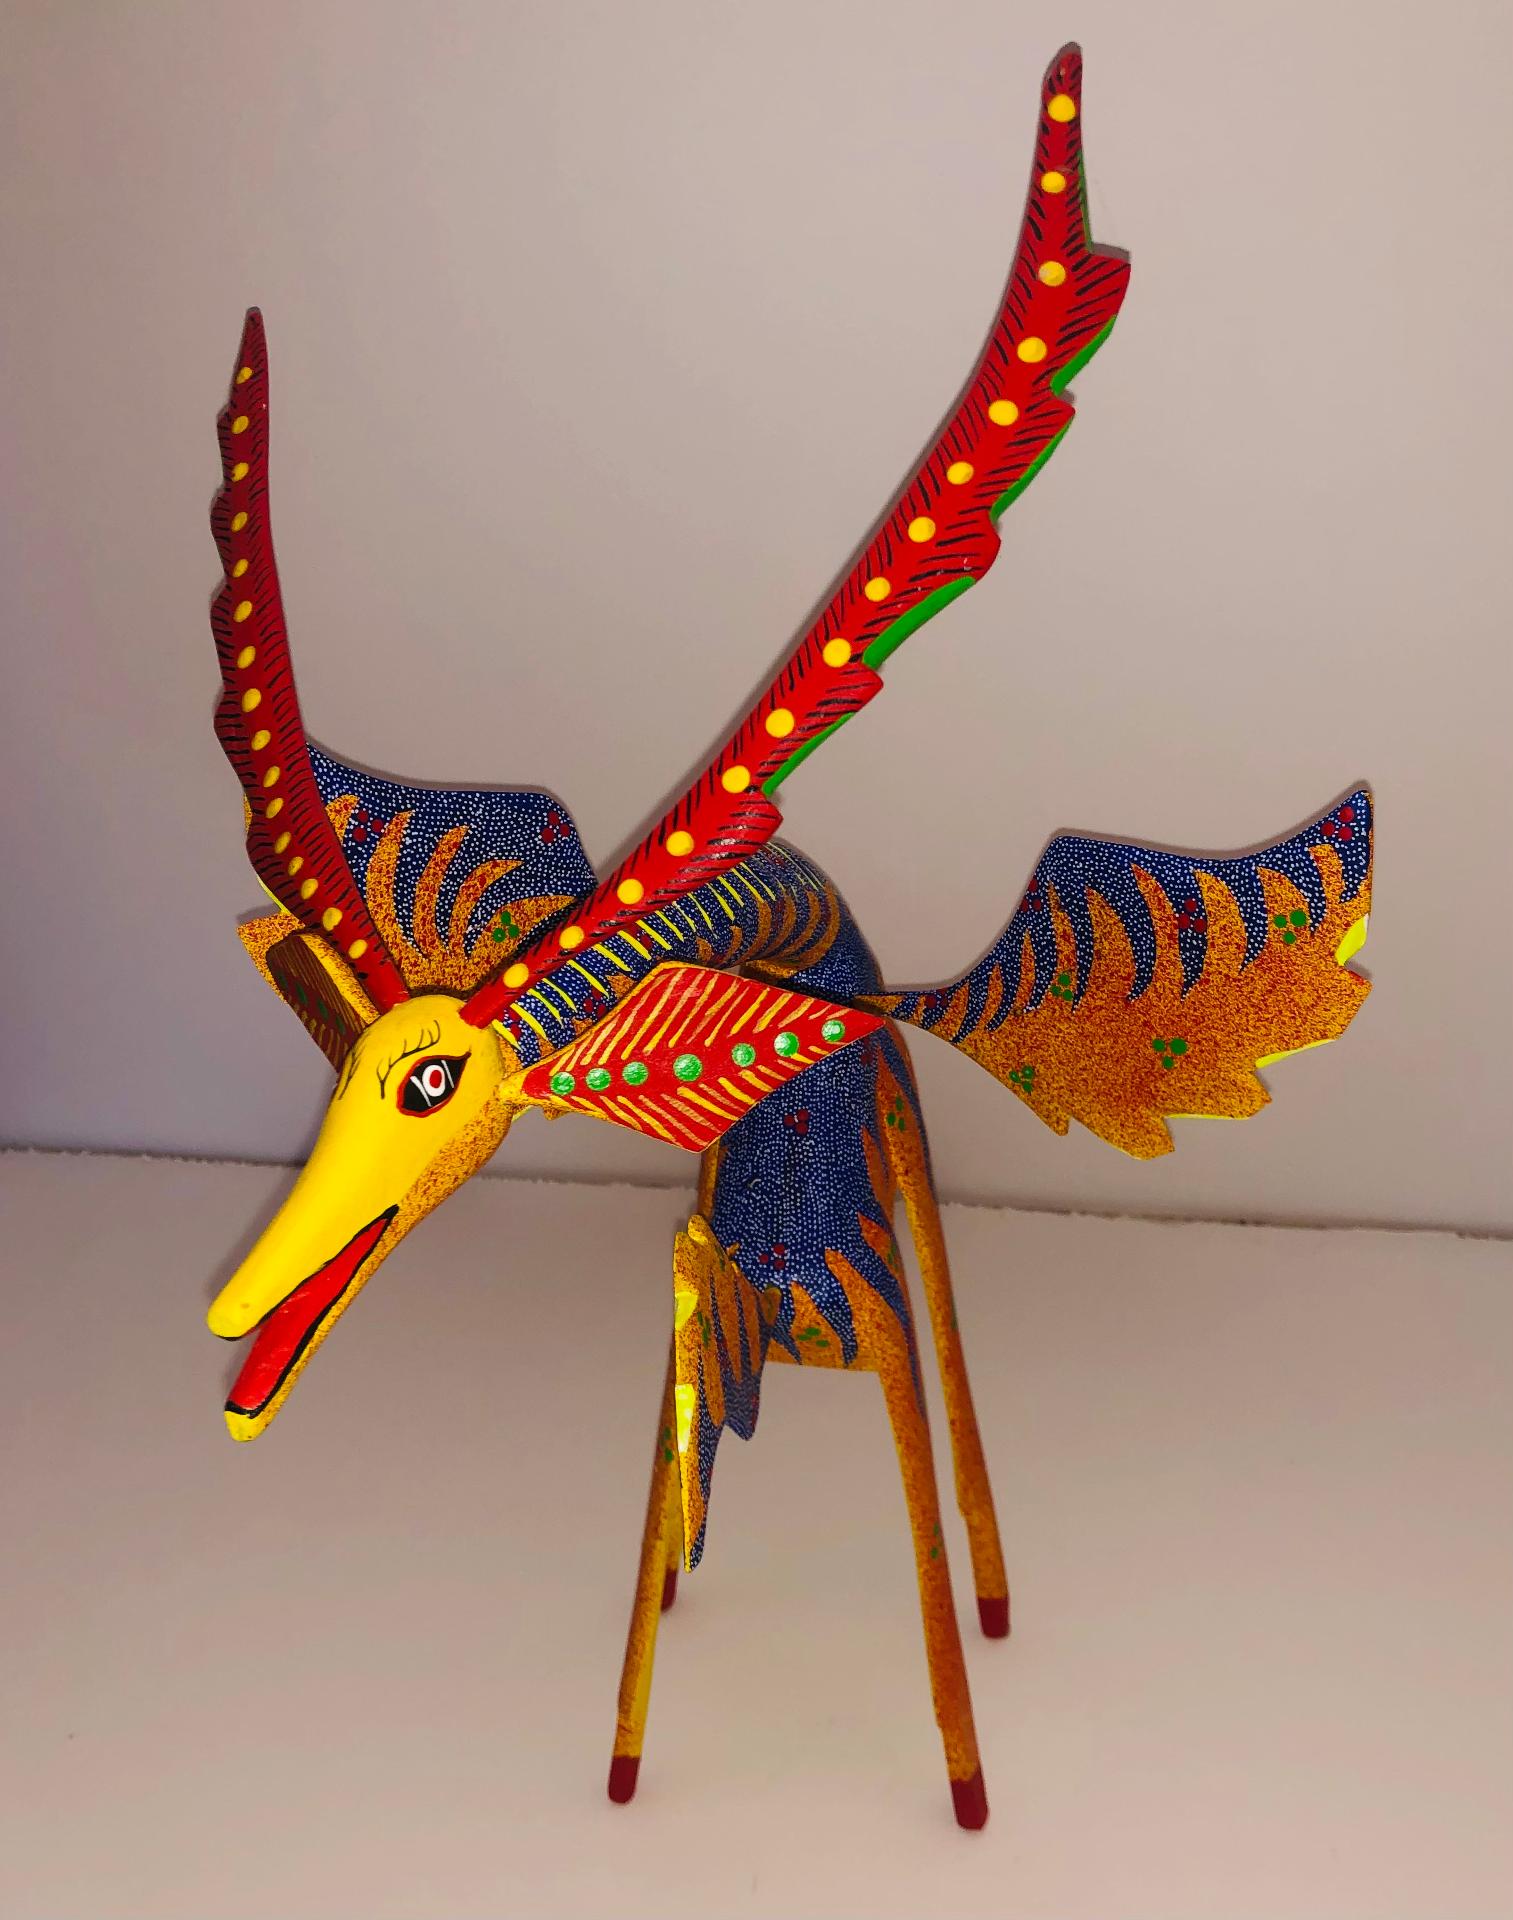 Cruz Soza - Flying Giraffe, c. 2000